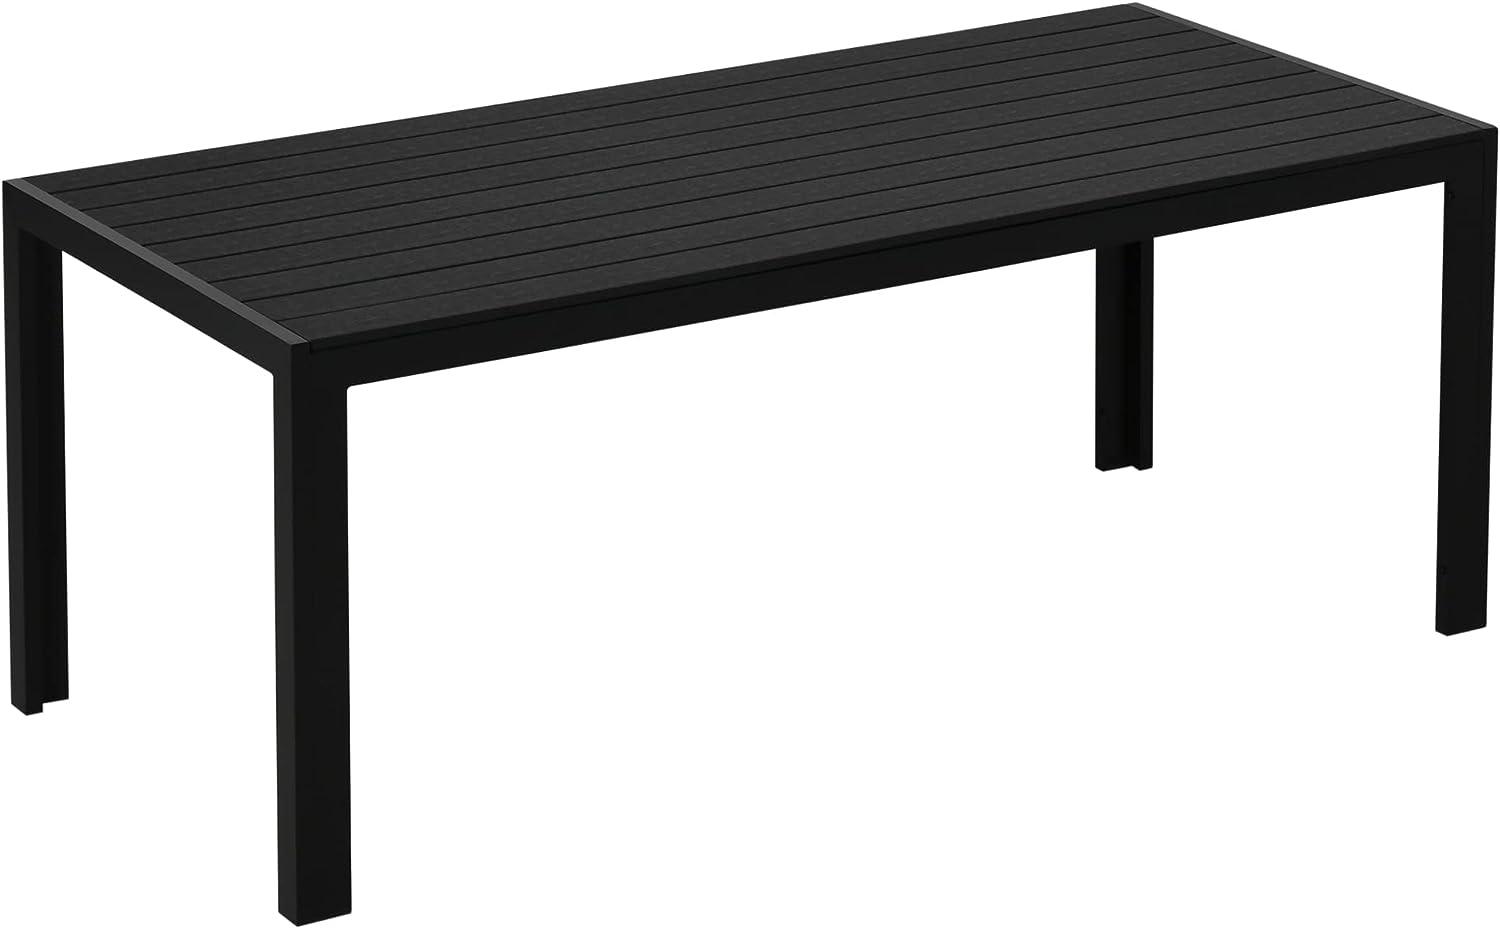 Outsunny Gartentisch Aluminium Tisch Garten Terrasse Holz-Kunststoff WPC Non-Wood schwarz Bild 1